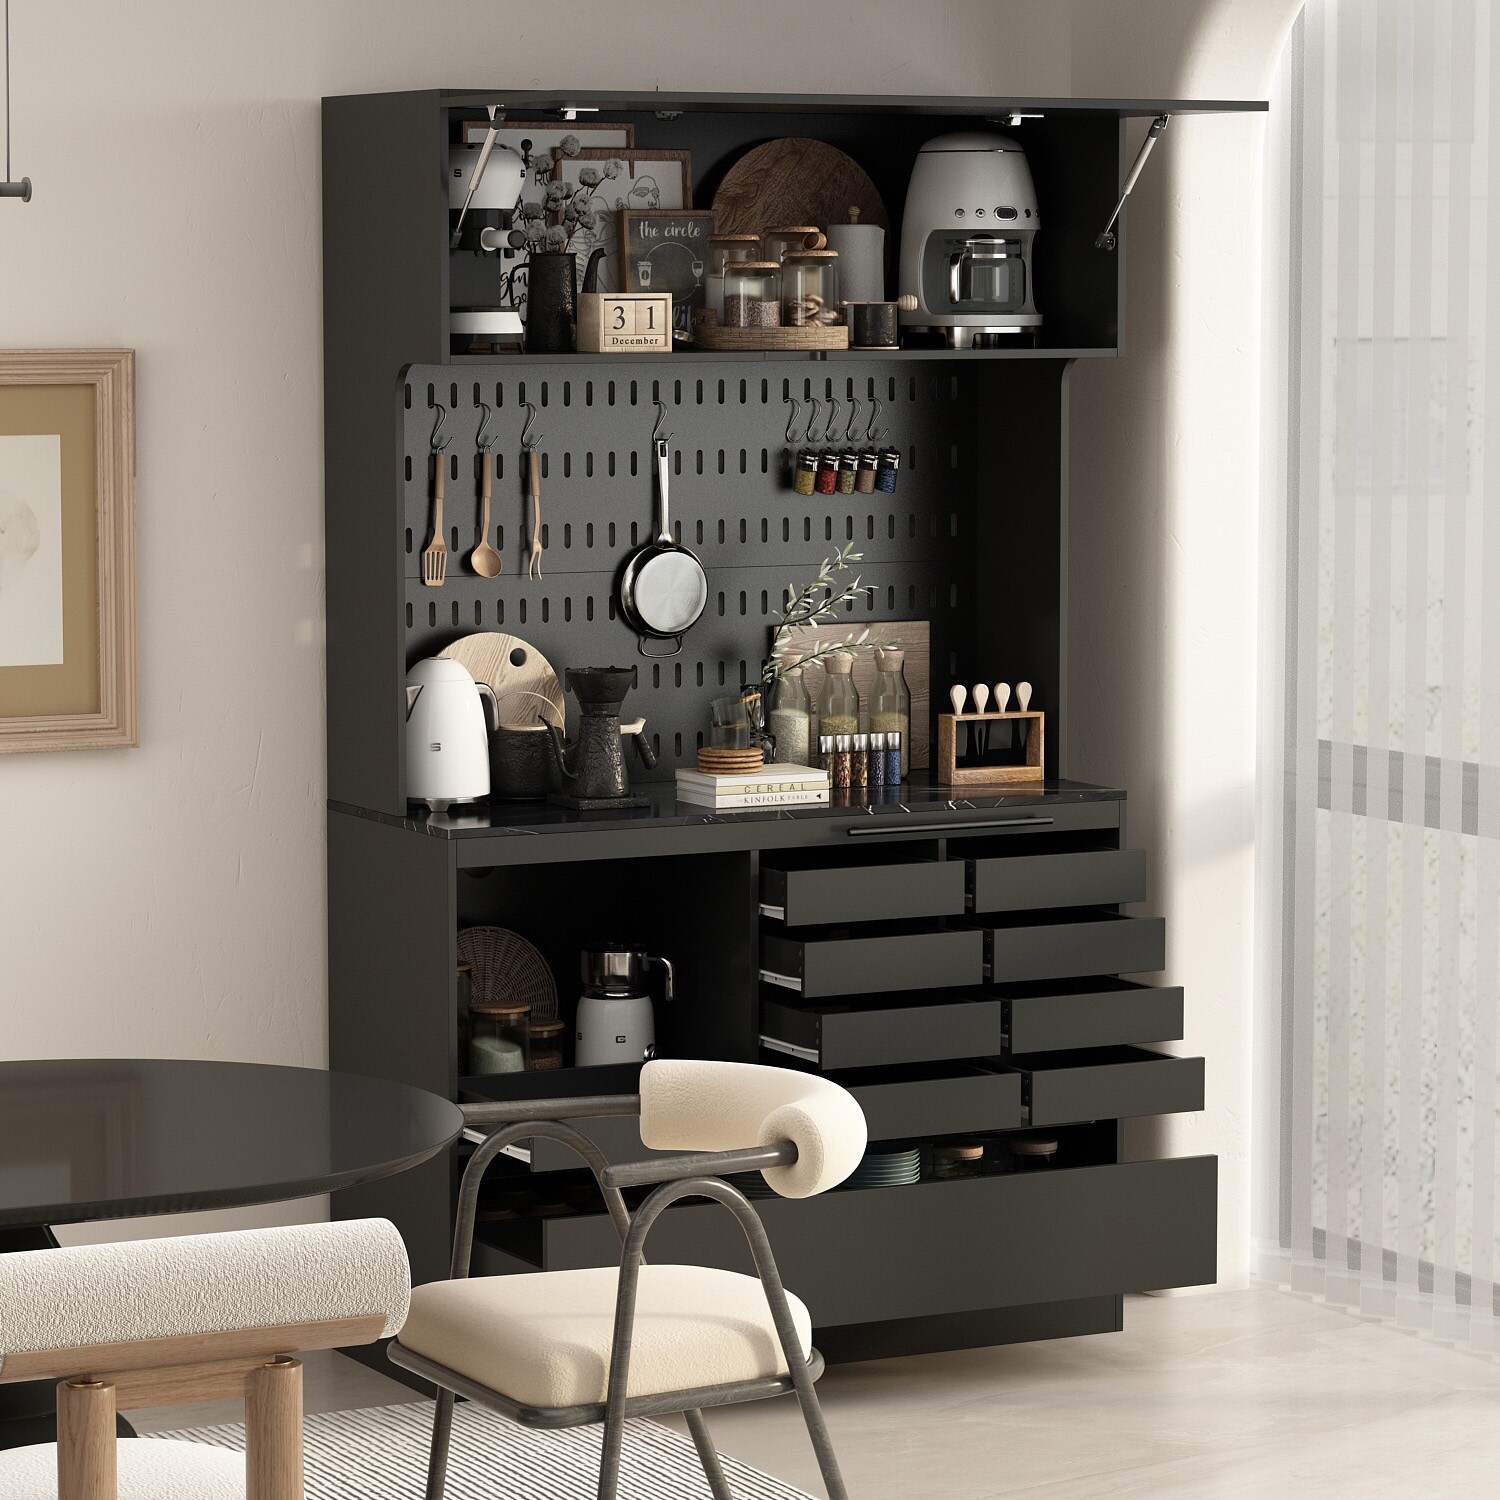 Free Standing Modular Kitchen Cabinet/Cupboard Storage Set